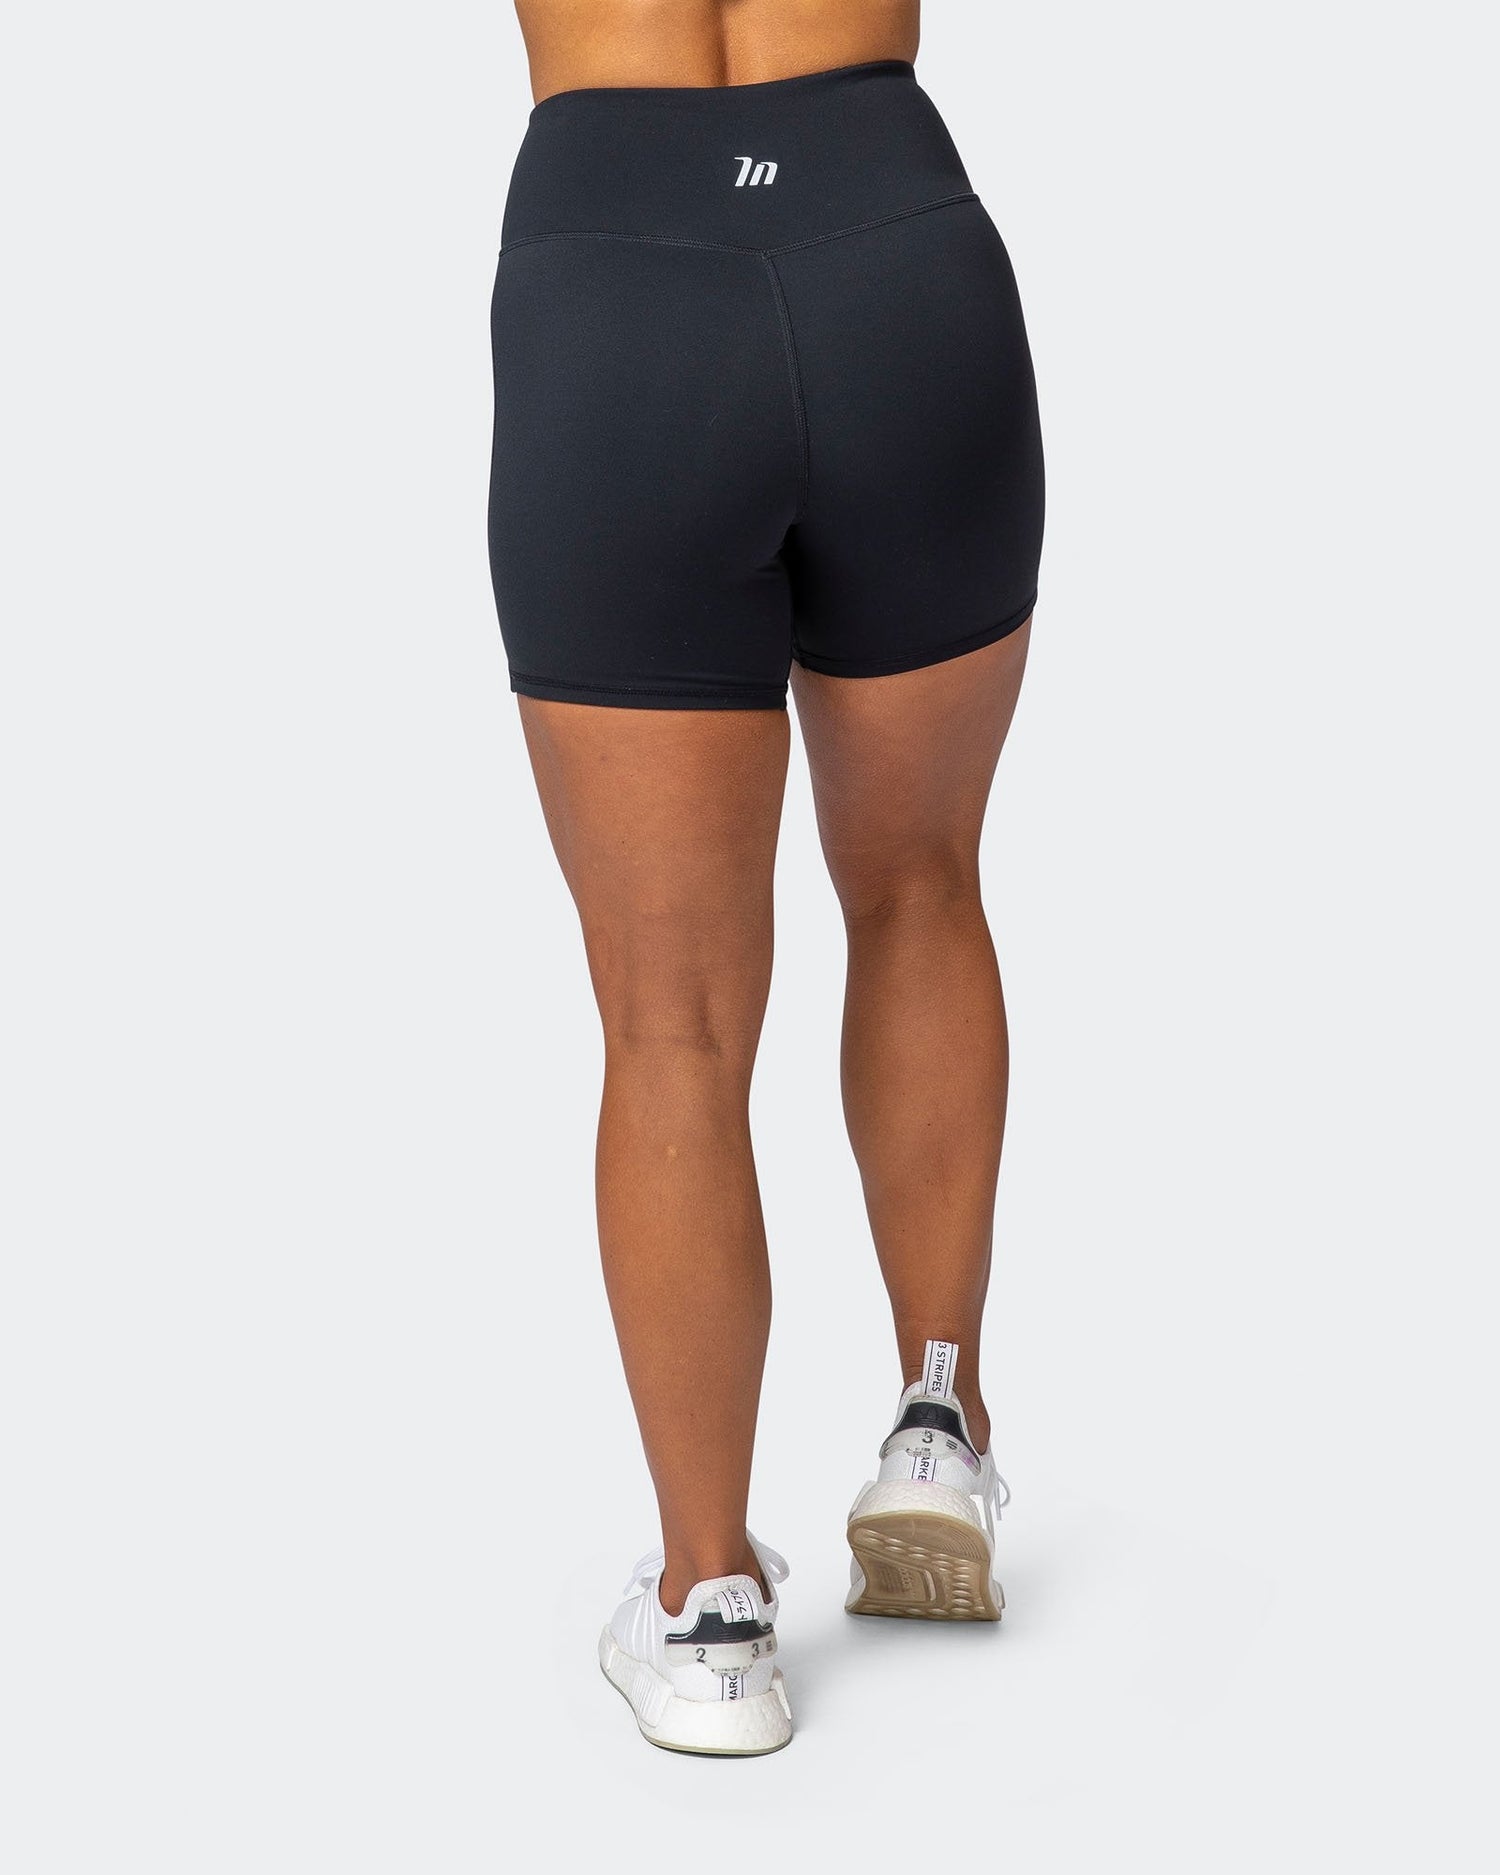 Superior Squat Bike Shorts - Black